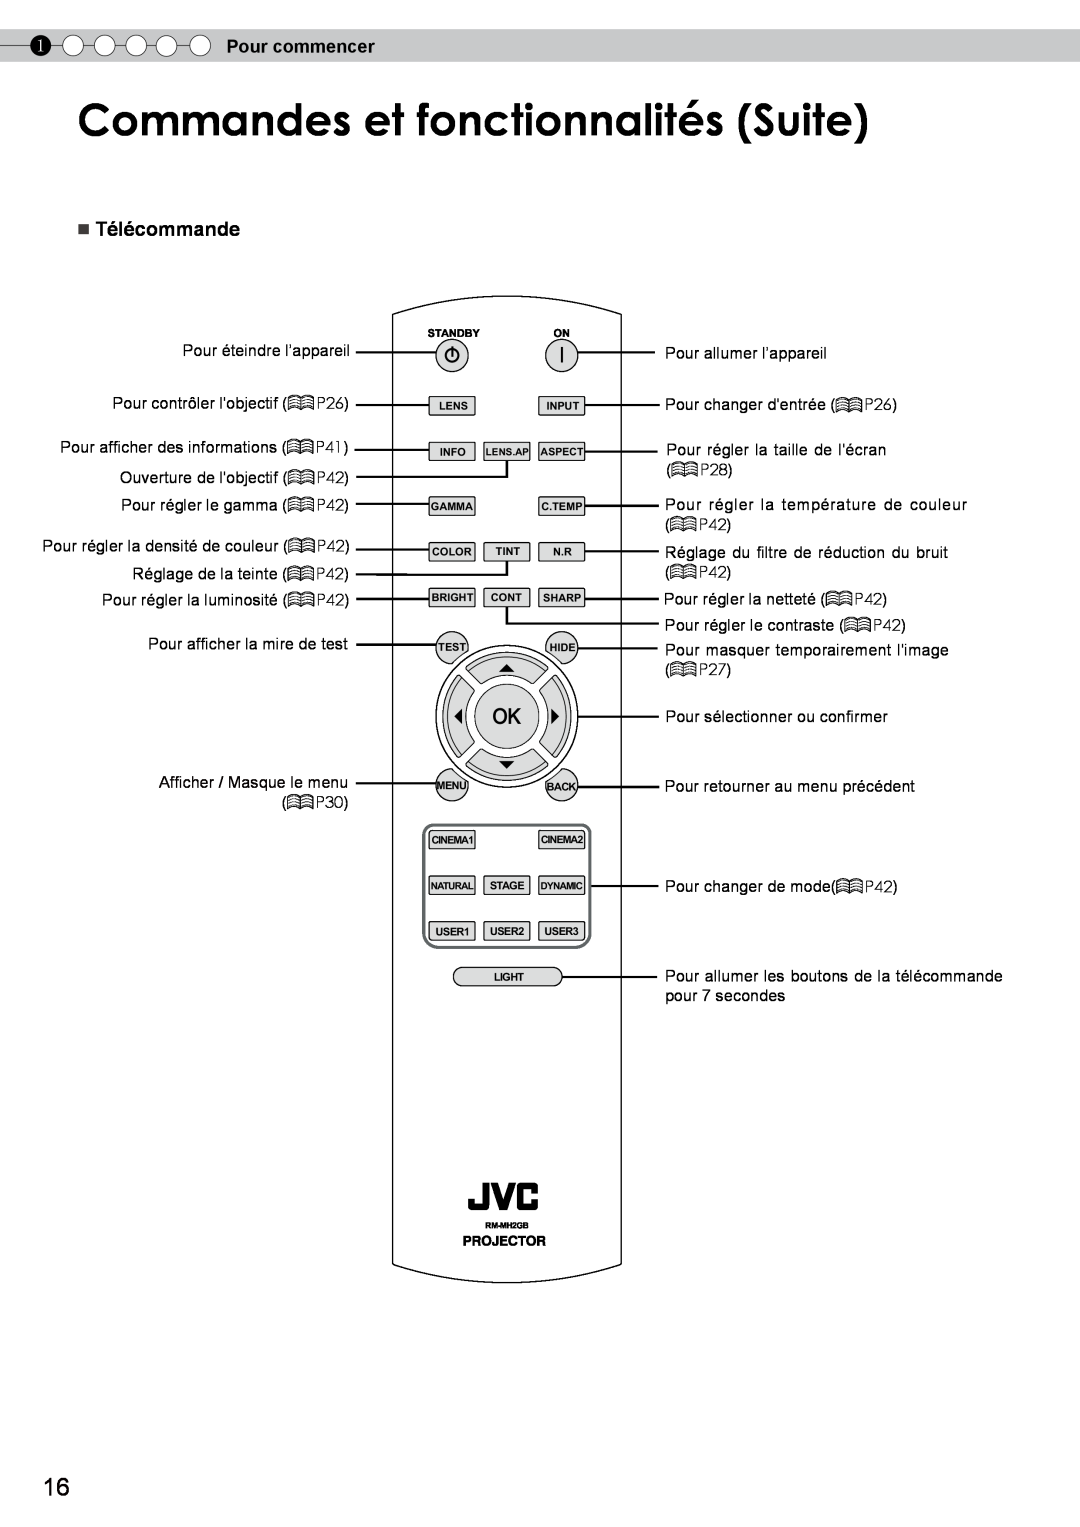 JVC DLA-RS10 manual Commandes et fonctionnalités Suite, Télécommande, Pour commencer, Afficher / Masque le menu P30 